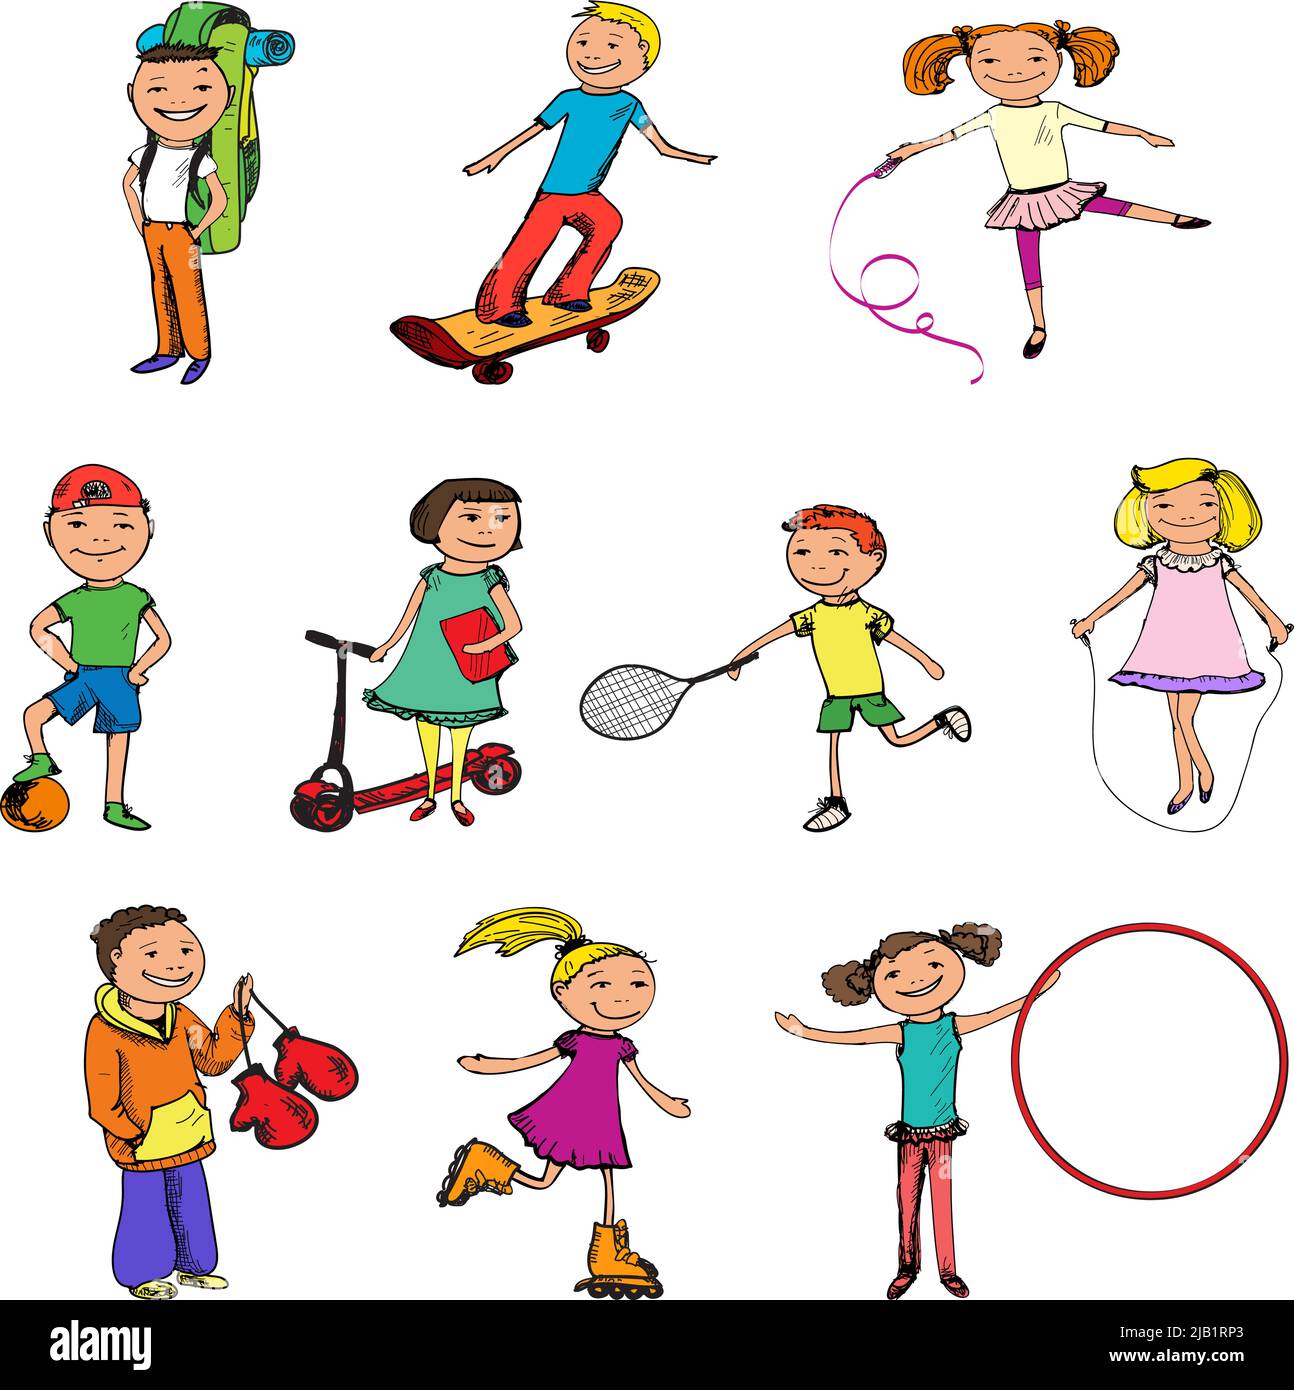 Bambini ragazzi e ragazze con palla tennis racchetta jumping corda sport colored sketch caratteri set isolato vettore illustrazione Illustrazione Vettoriale